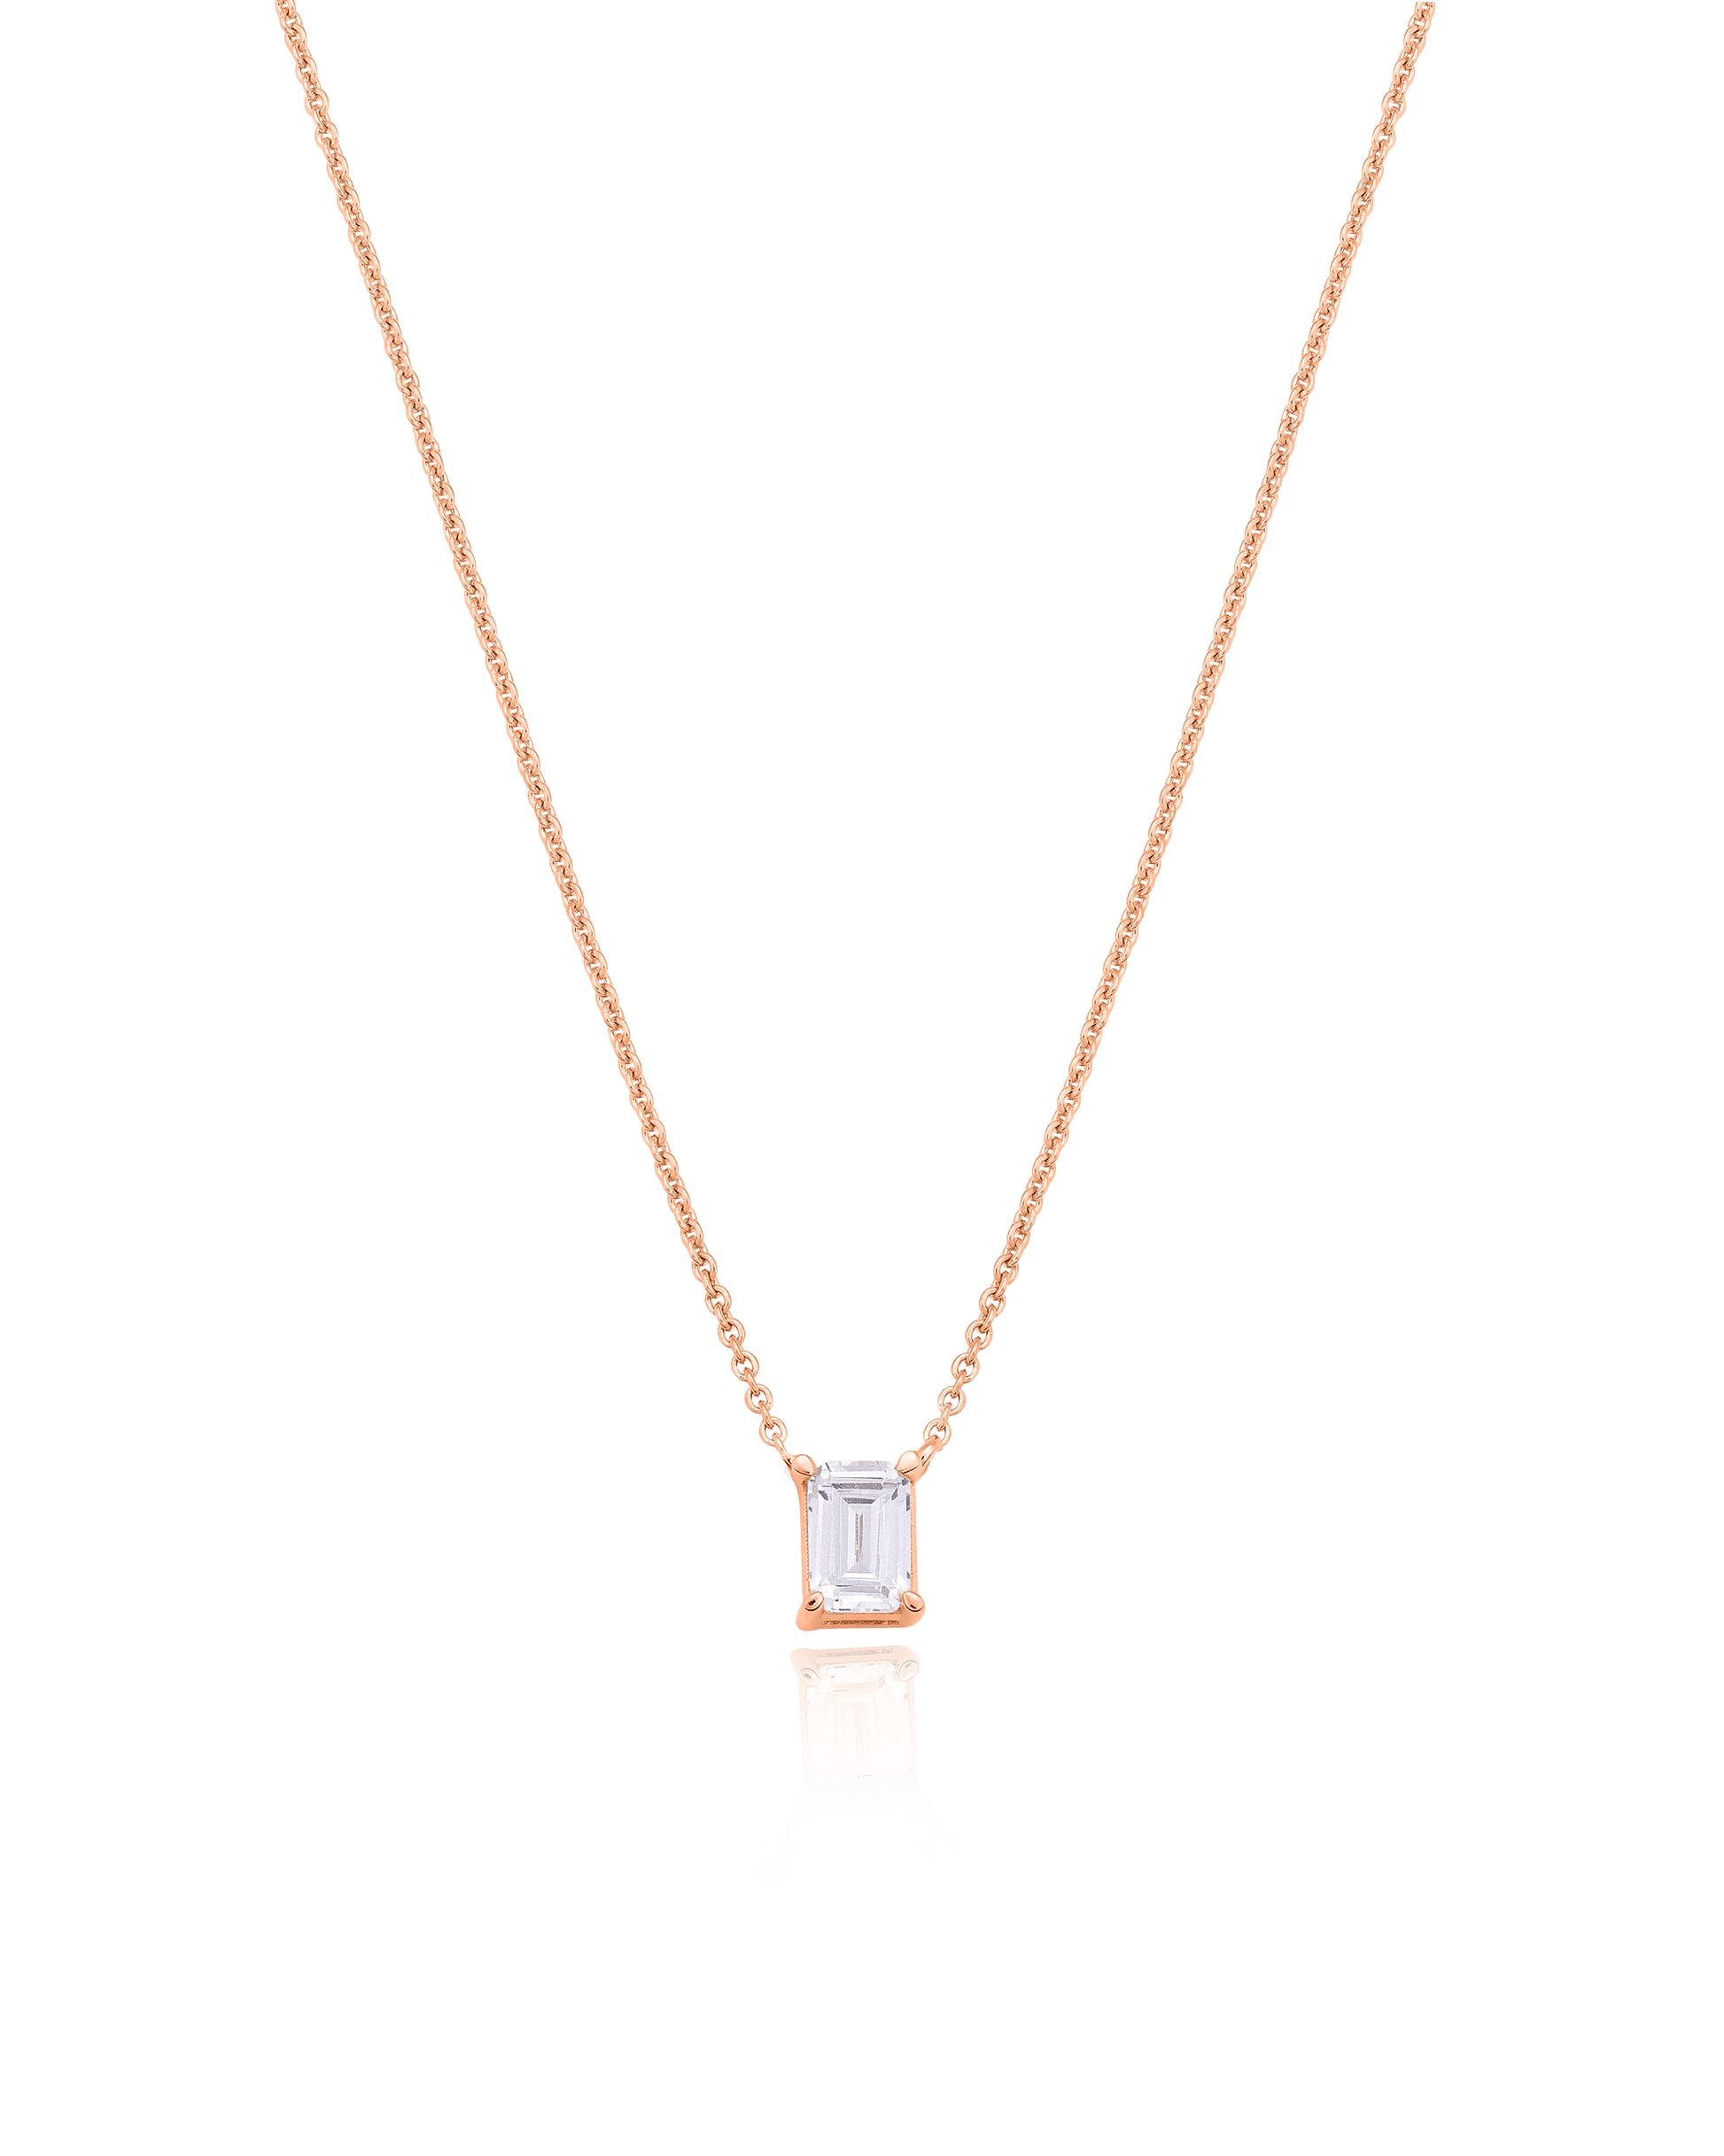 Emerald Solitaire Diamond Necklace - 18K Gold Vermeil Necklaces magal-dev 